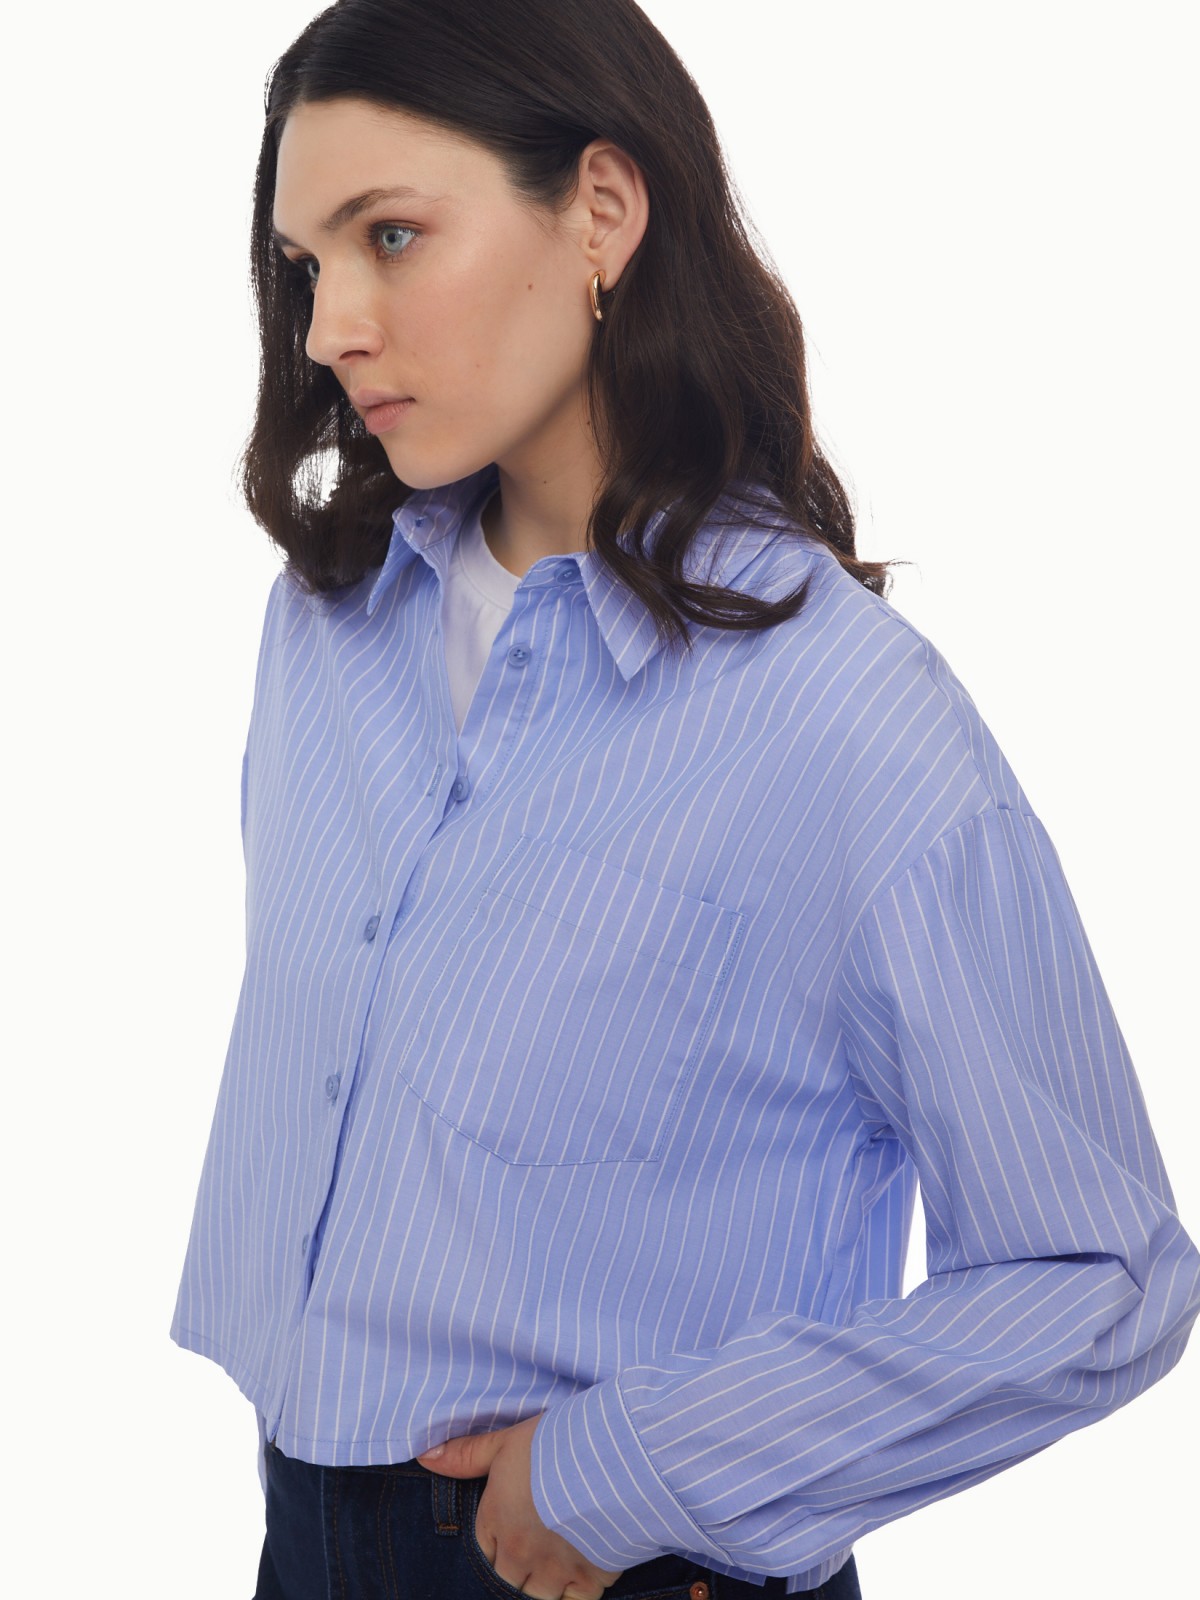 Рубашка укороченного силуэта с узором в полоску zolla 024131159163, цвет светло-голубой, размер XS - фото 4